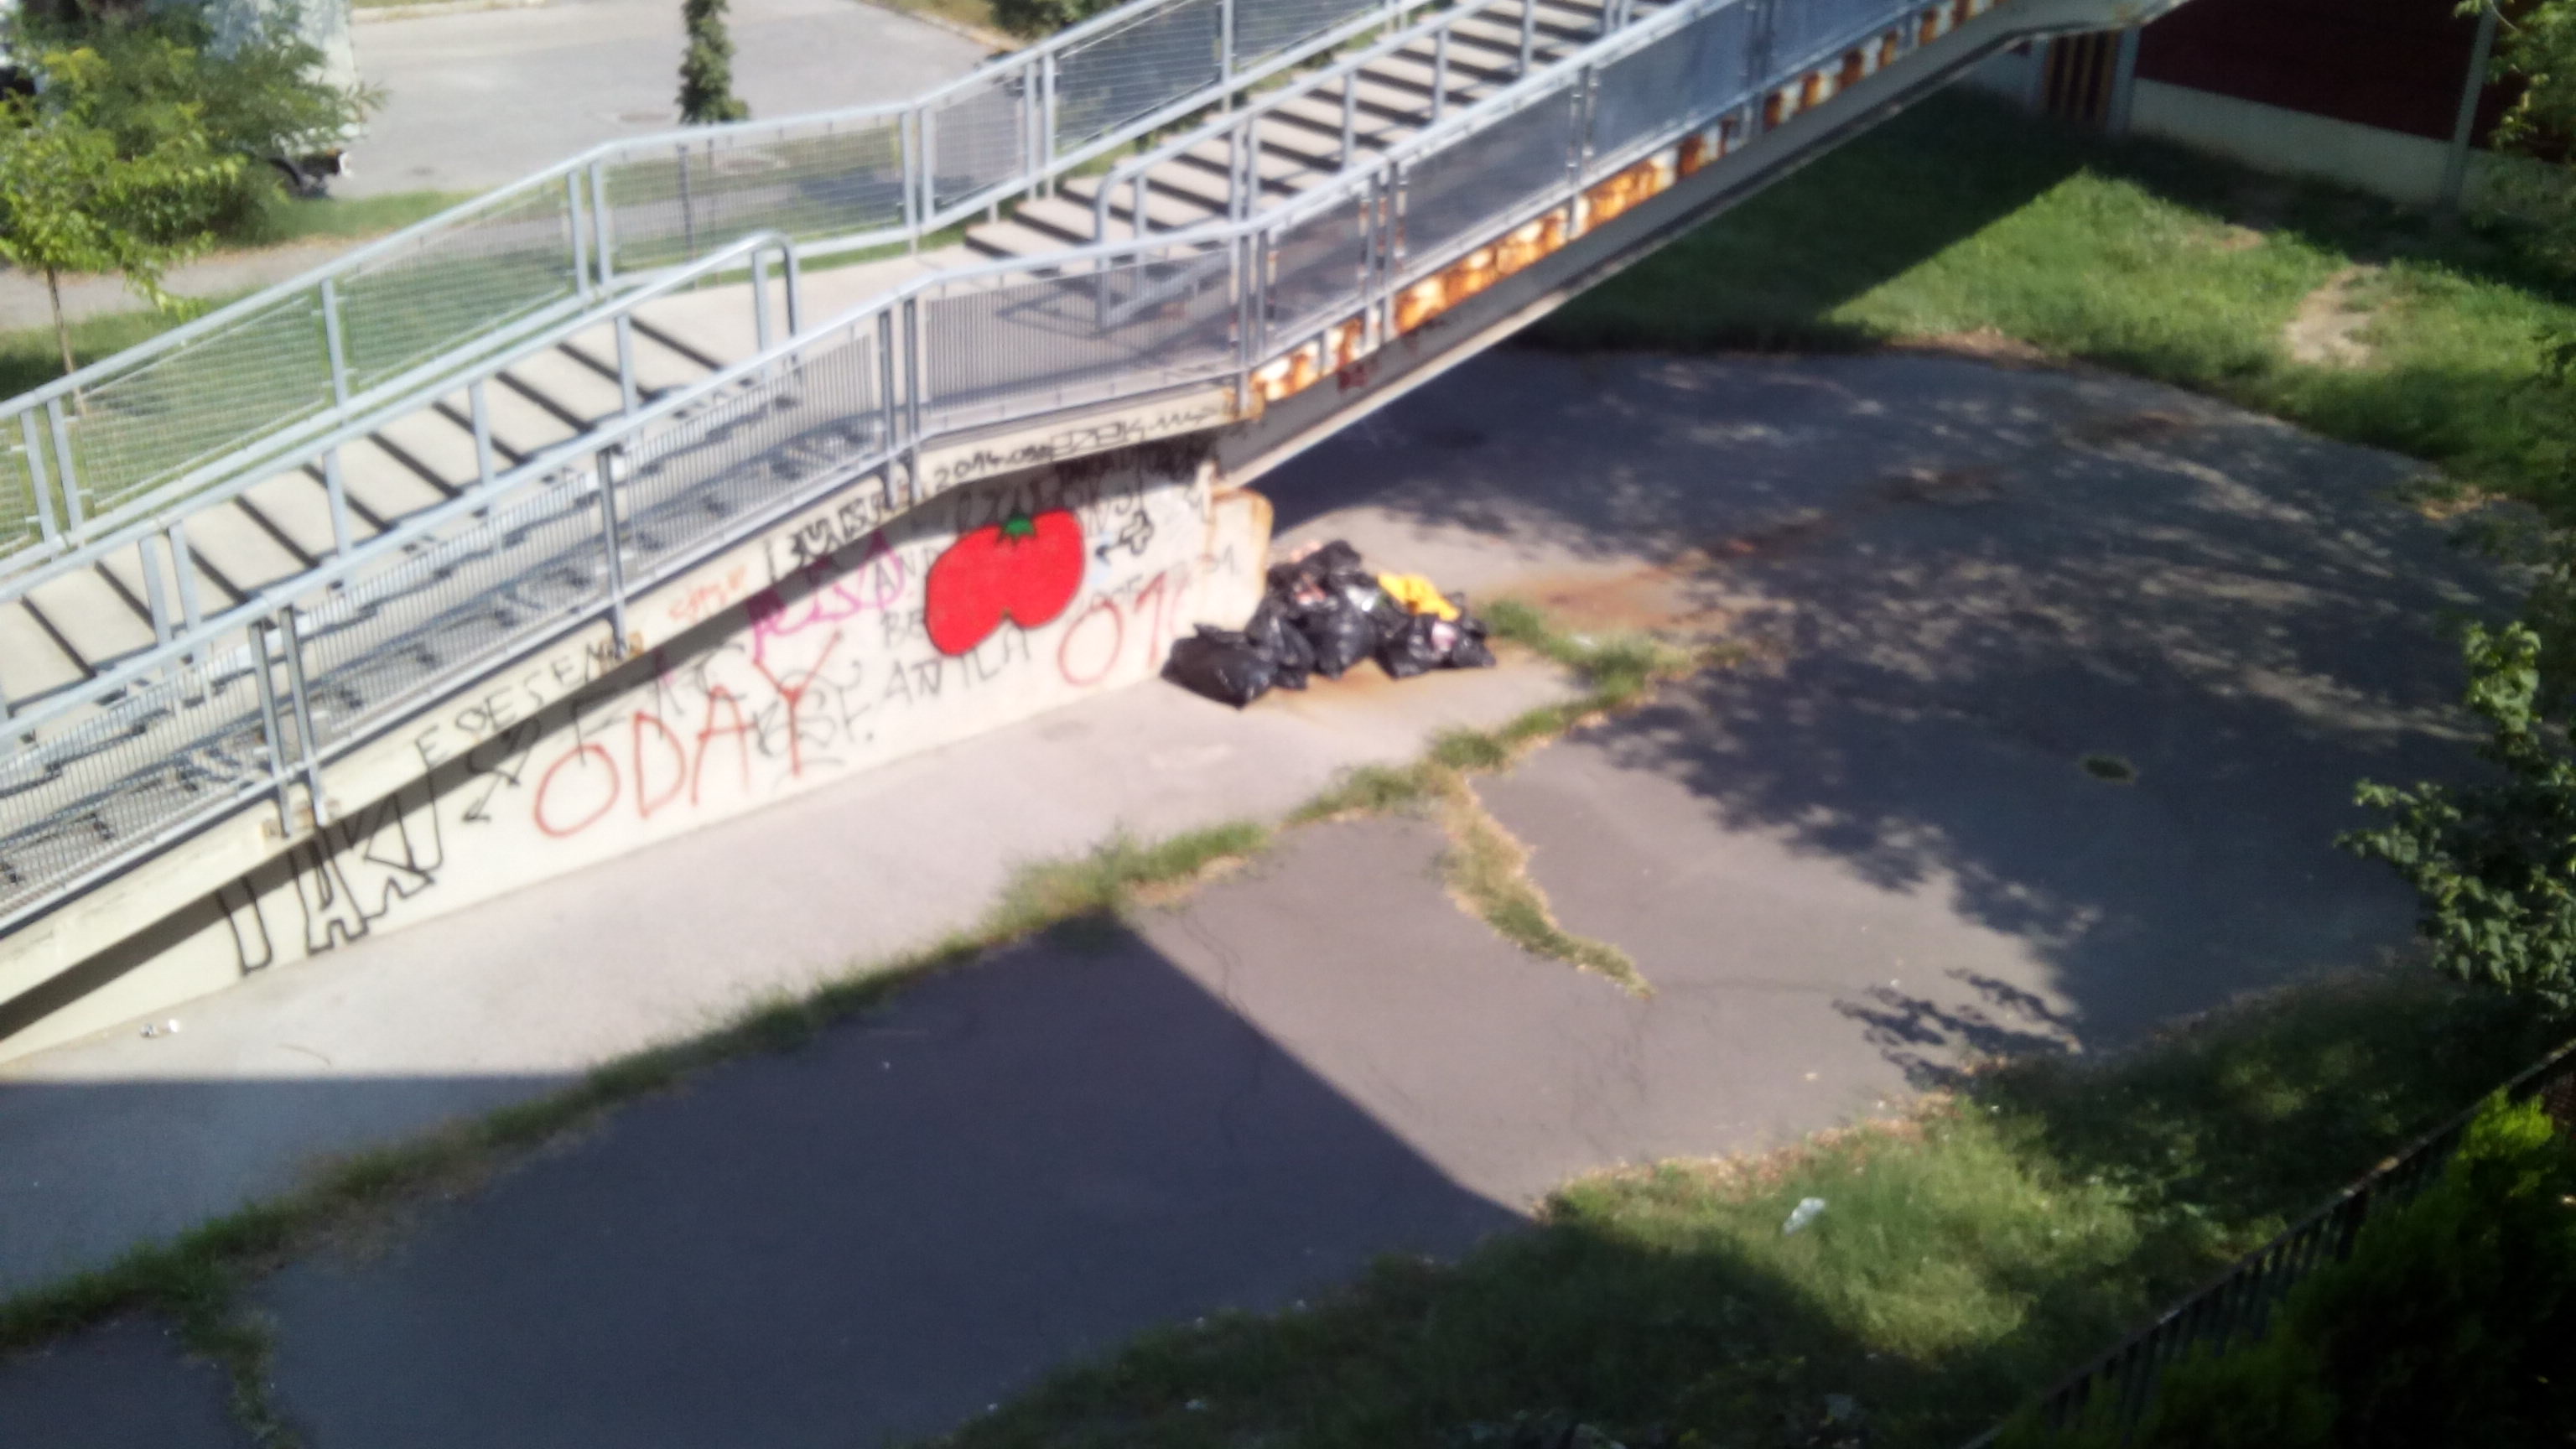 Háztartási hulladék a gyalogos felüljárónál | Budapest